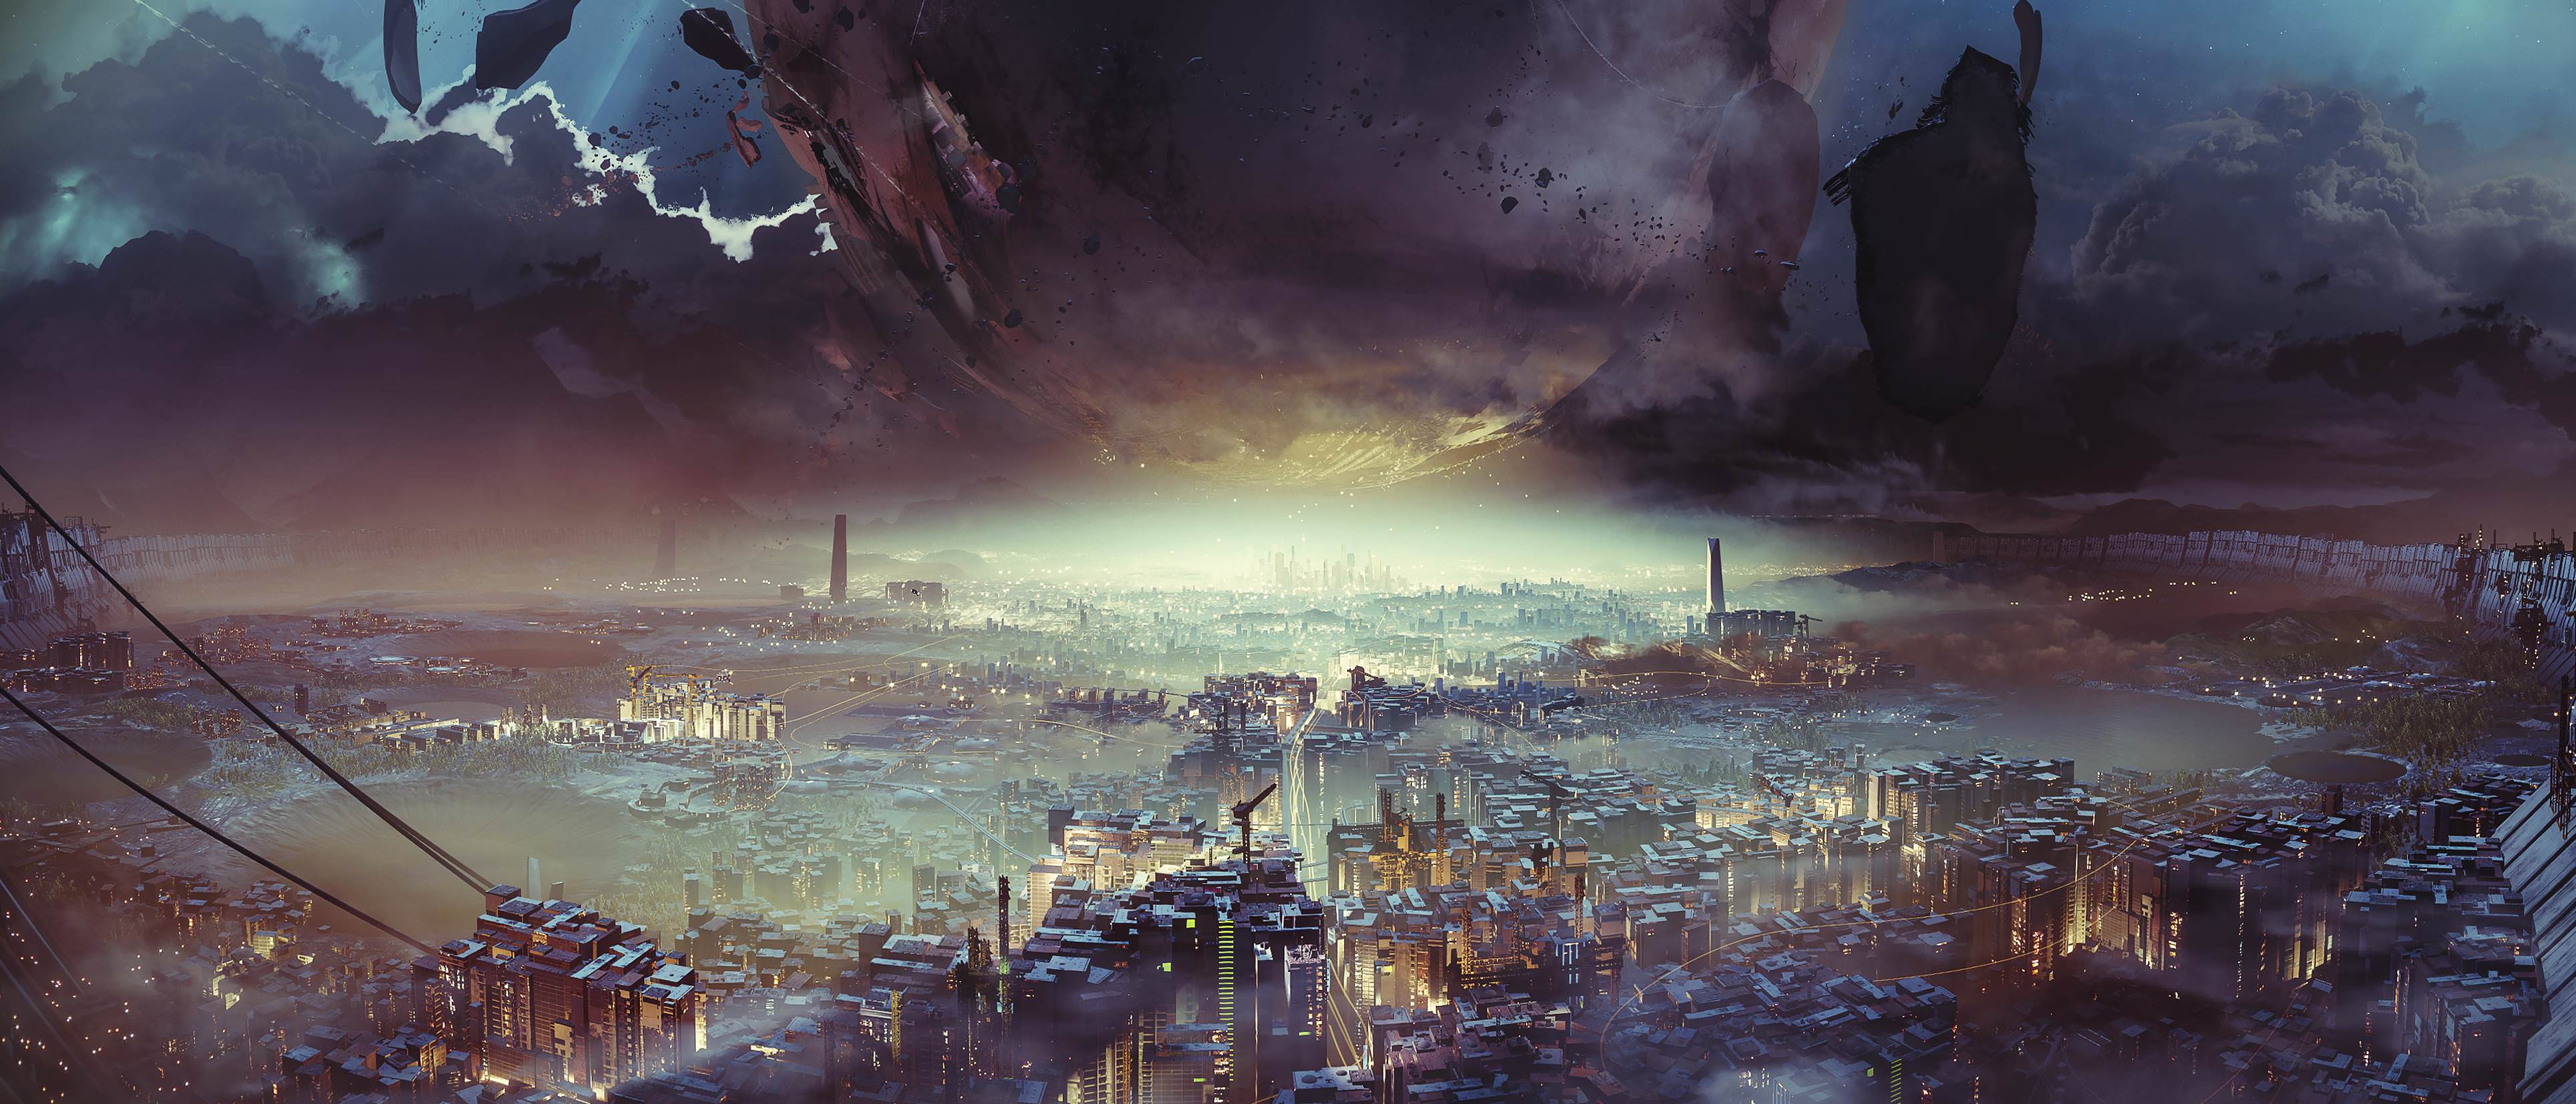 Destiny 2, Digital art, Artwork, Landscape, City, Cityscape, Video games, Science fiction, Destiny (video game) Wallpaper